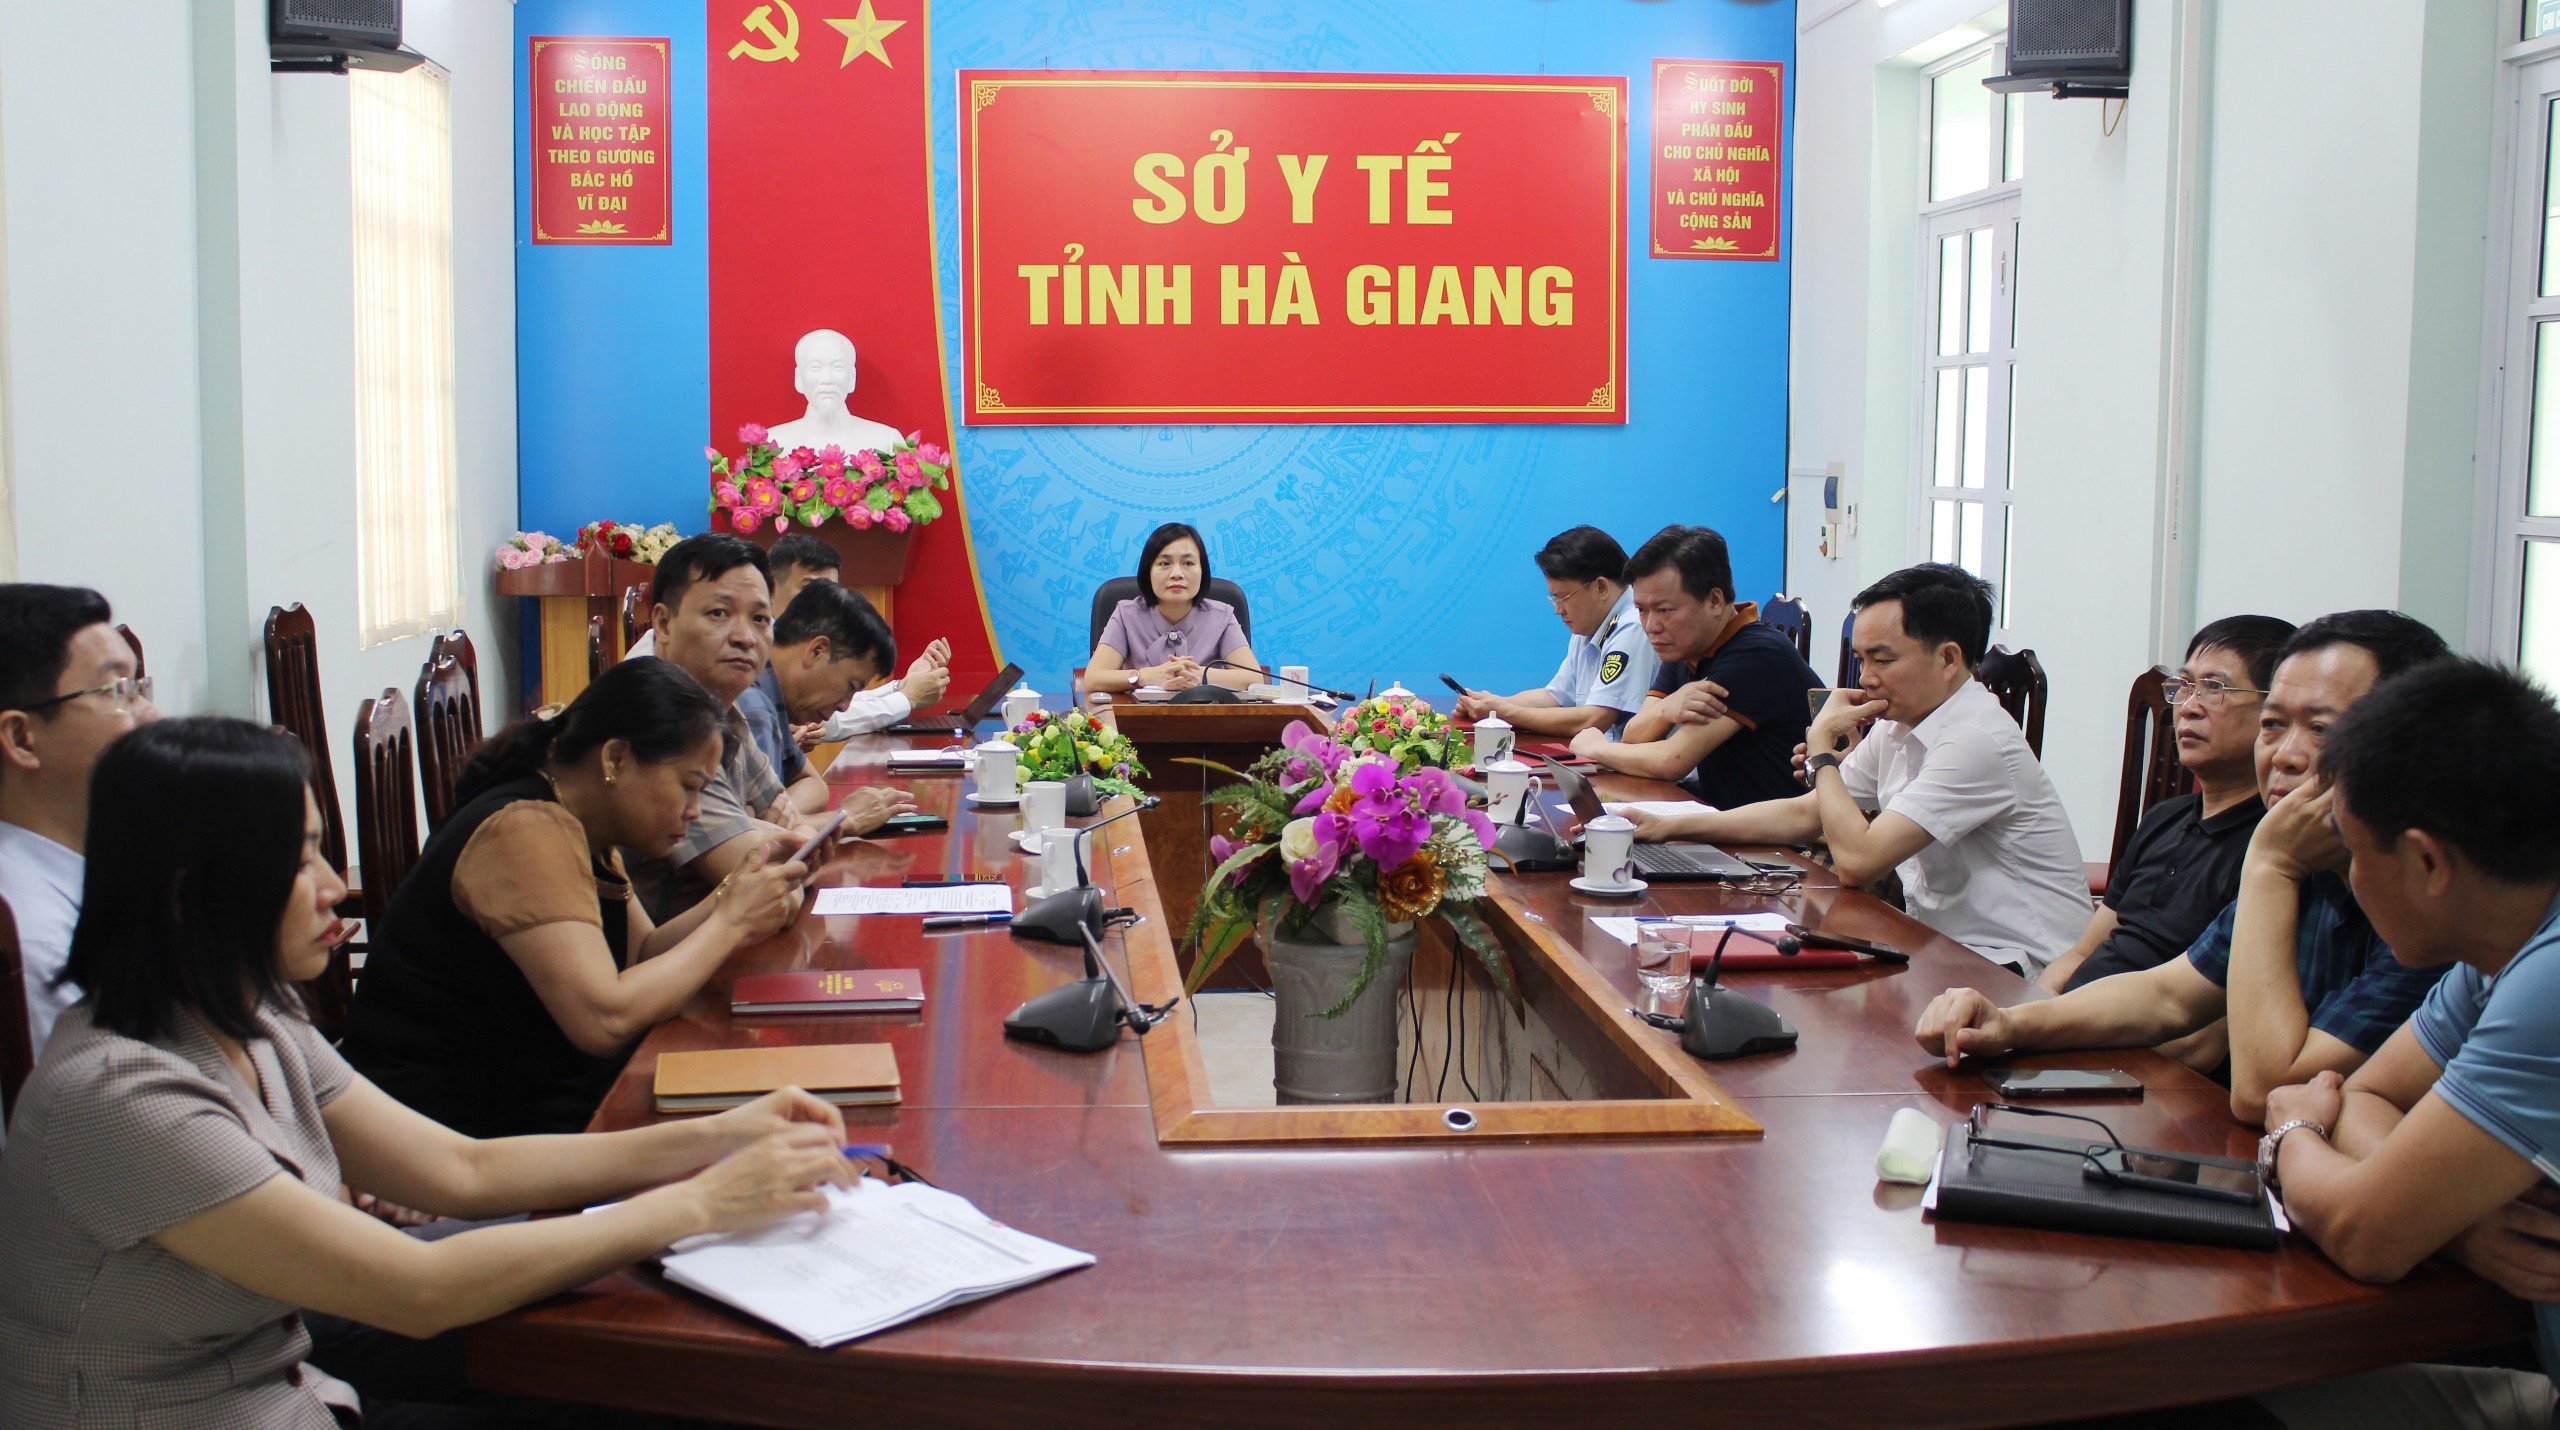 Đồng chí Đỗ Thị Mỹ, Phó Giám đốc Sở Y tế chủ trì Hội nghị tại điểm cầu tỉnh Hà Giang.